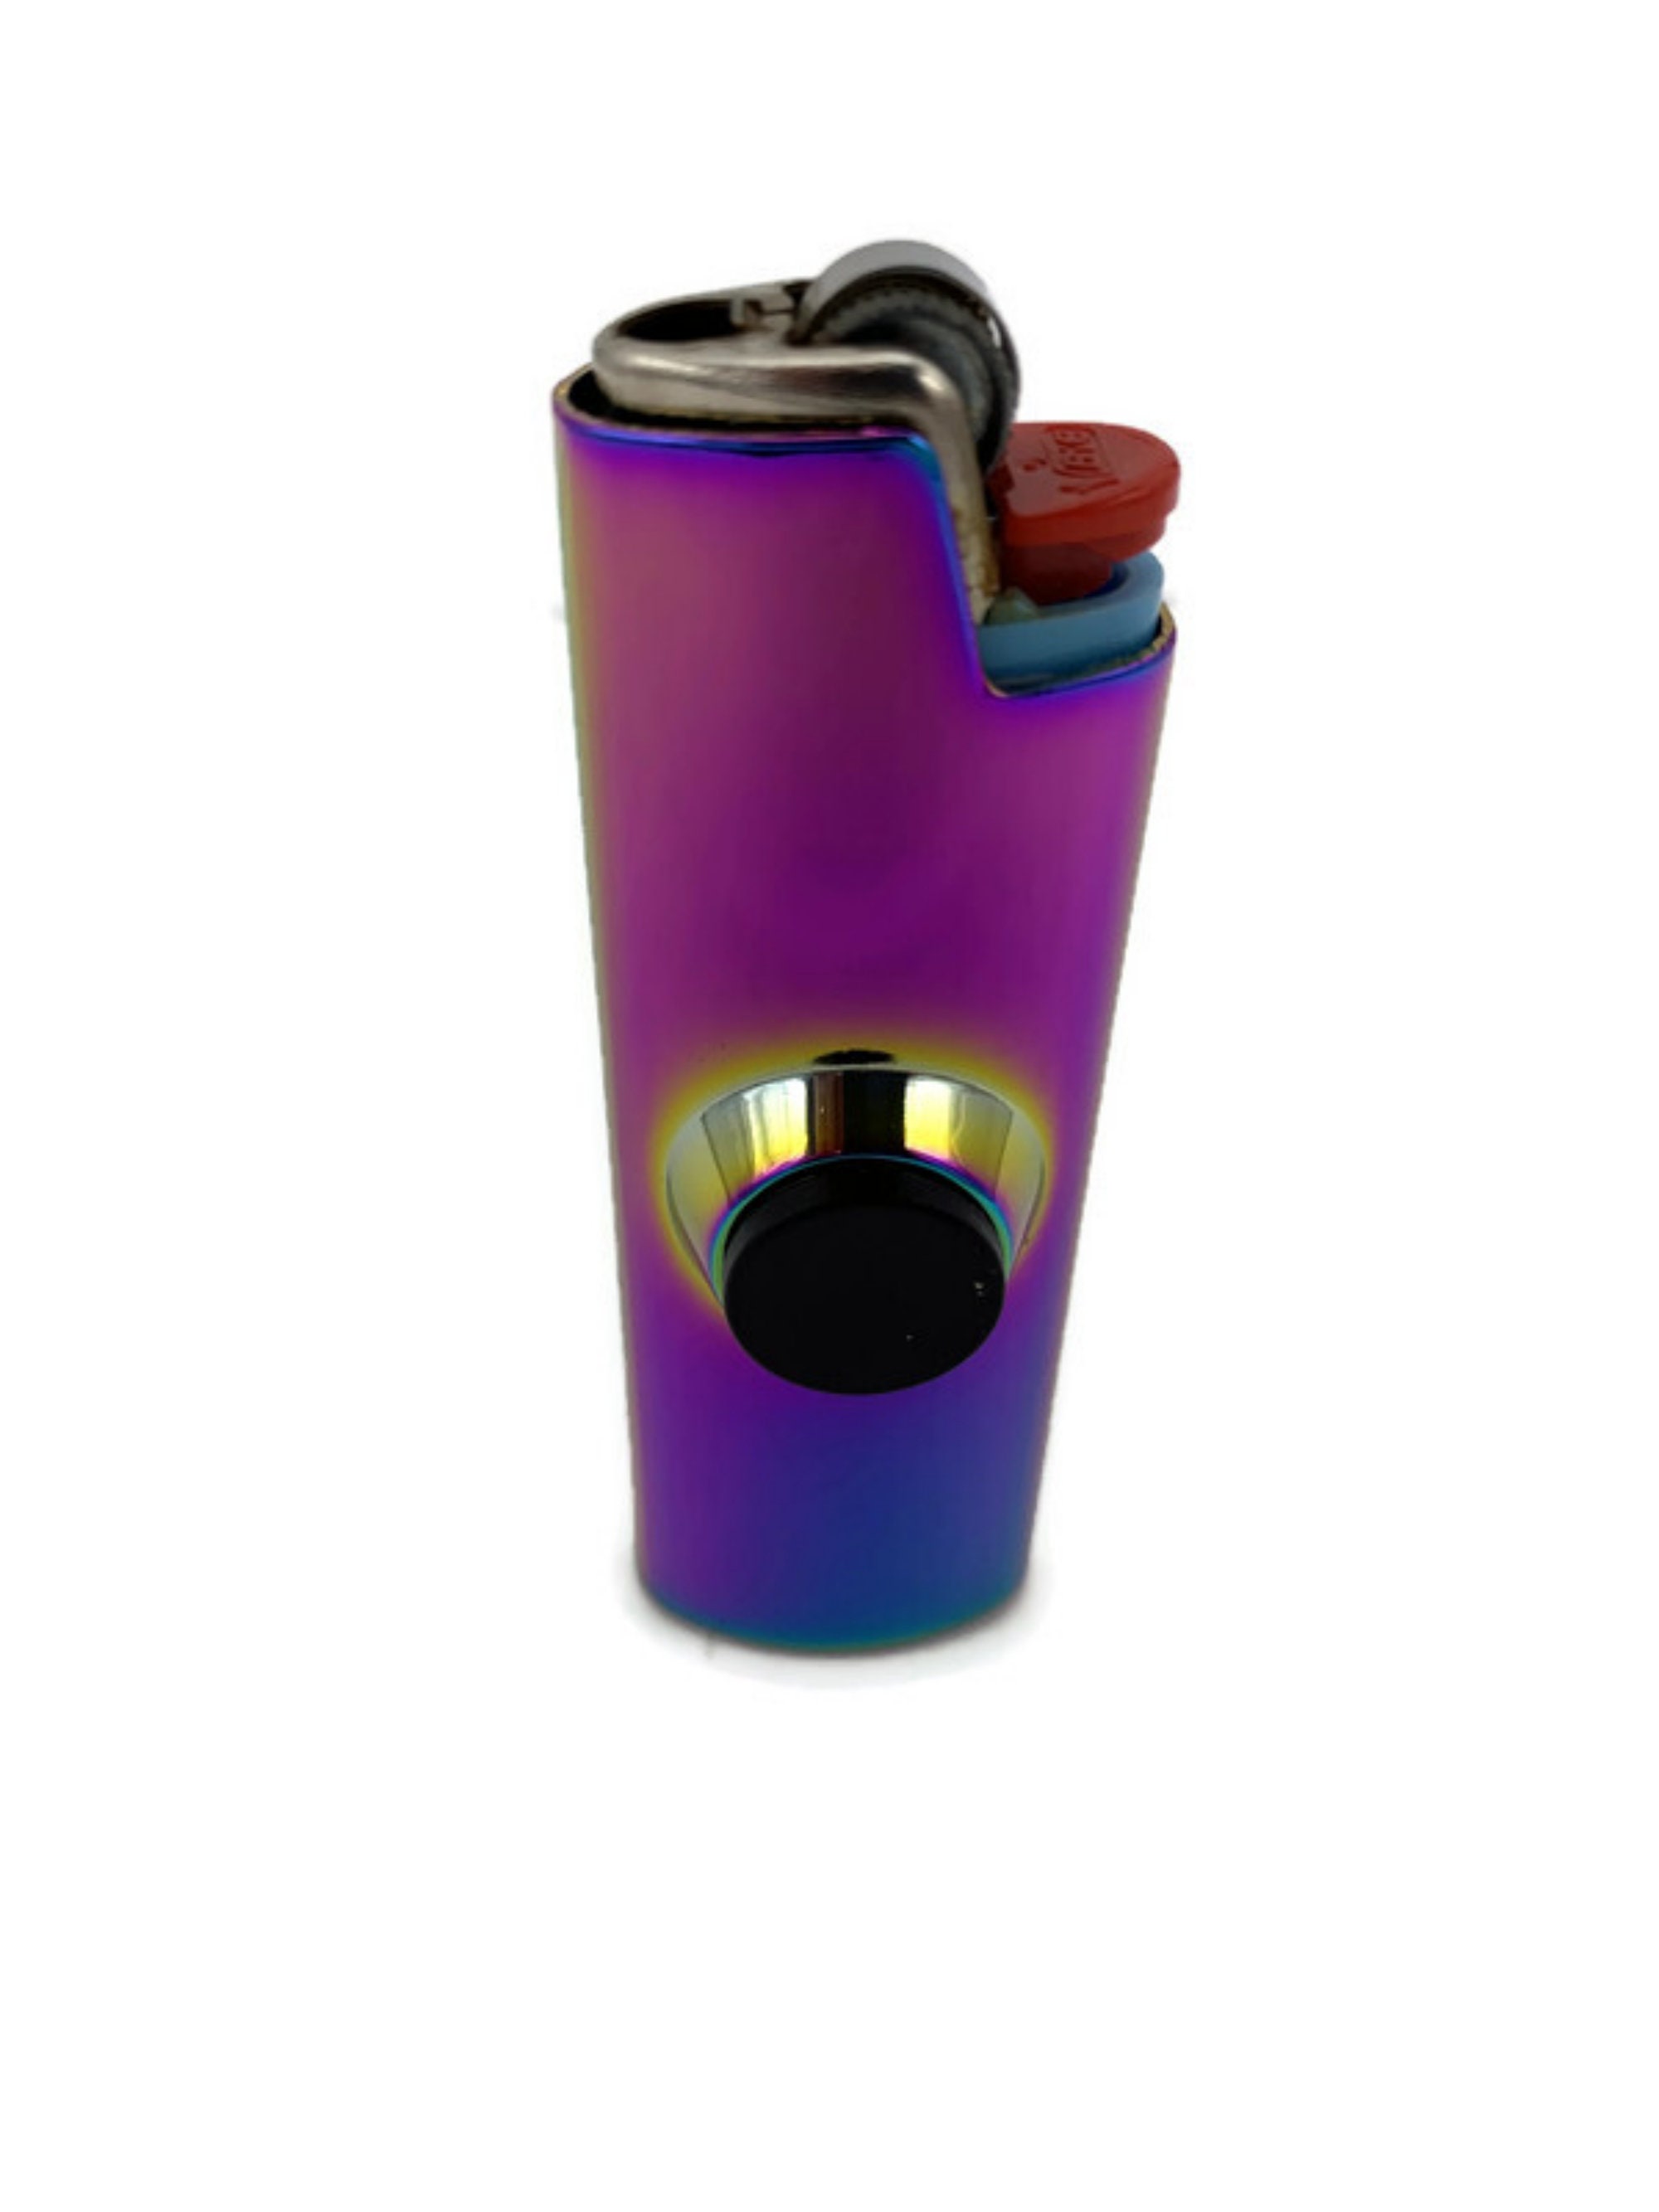 FLKR LYTR® Fidget Spinner Lighter Case Arizona for Clipper Lighter® Case  fidget spinner lighter case - $13.95